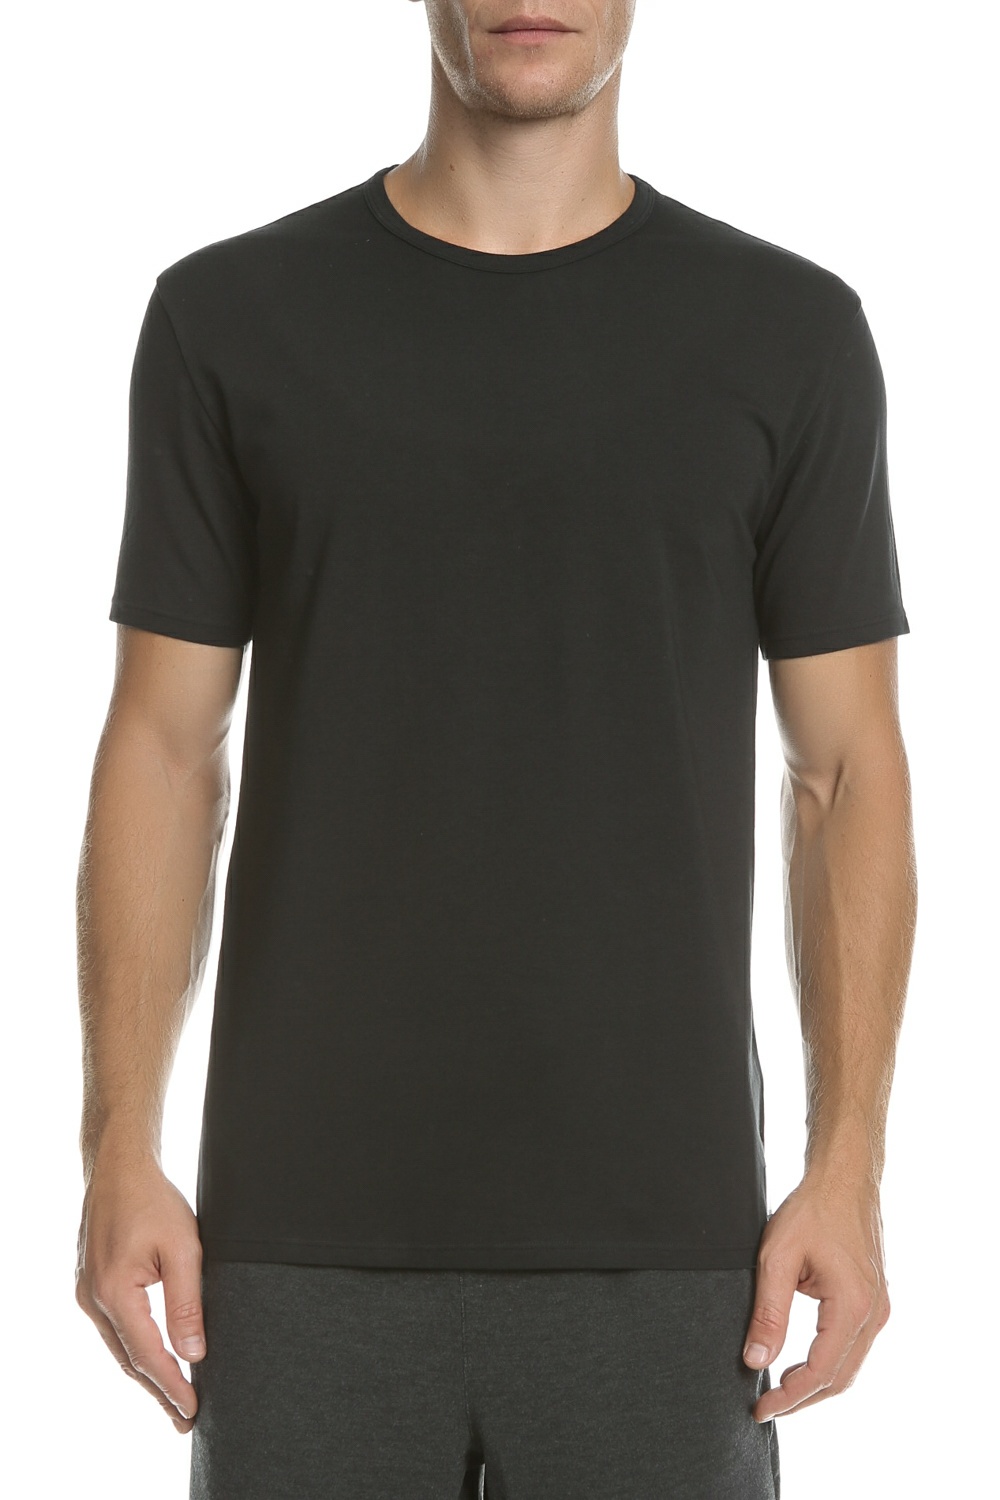 CK UNDERWEAR – Ανδρικό T-shirt CK UNDERWEAR μαύρο 1521814.0-0071